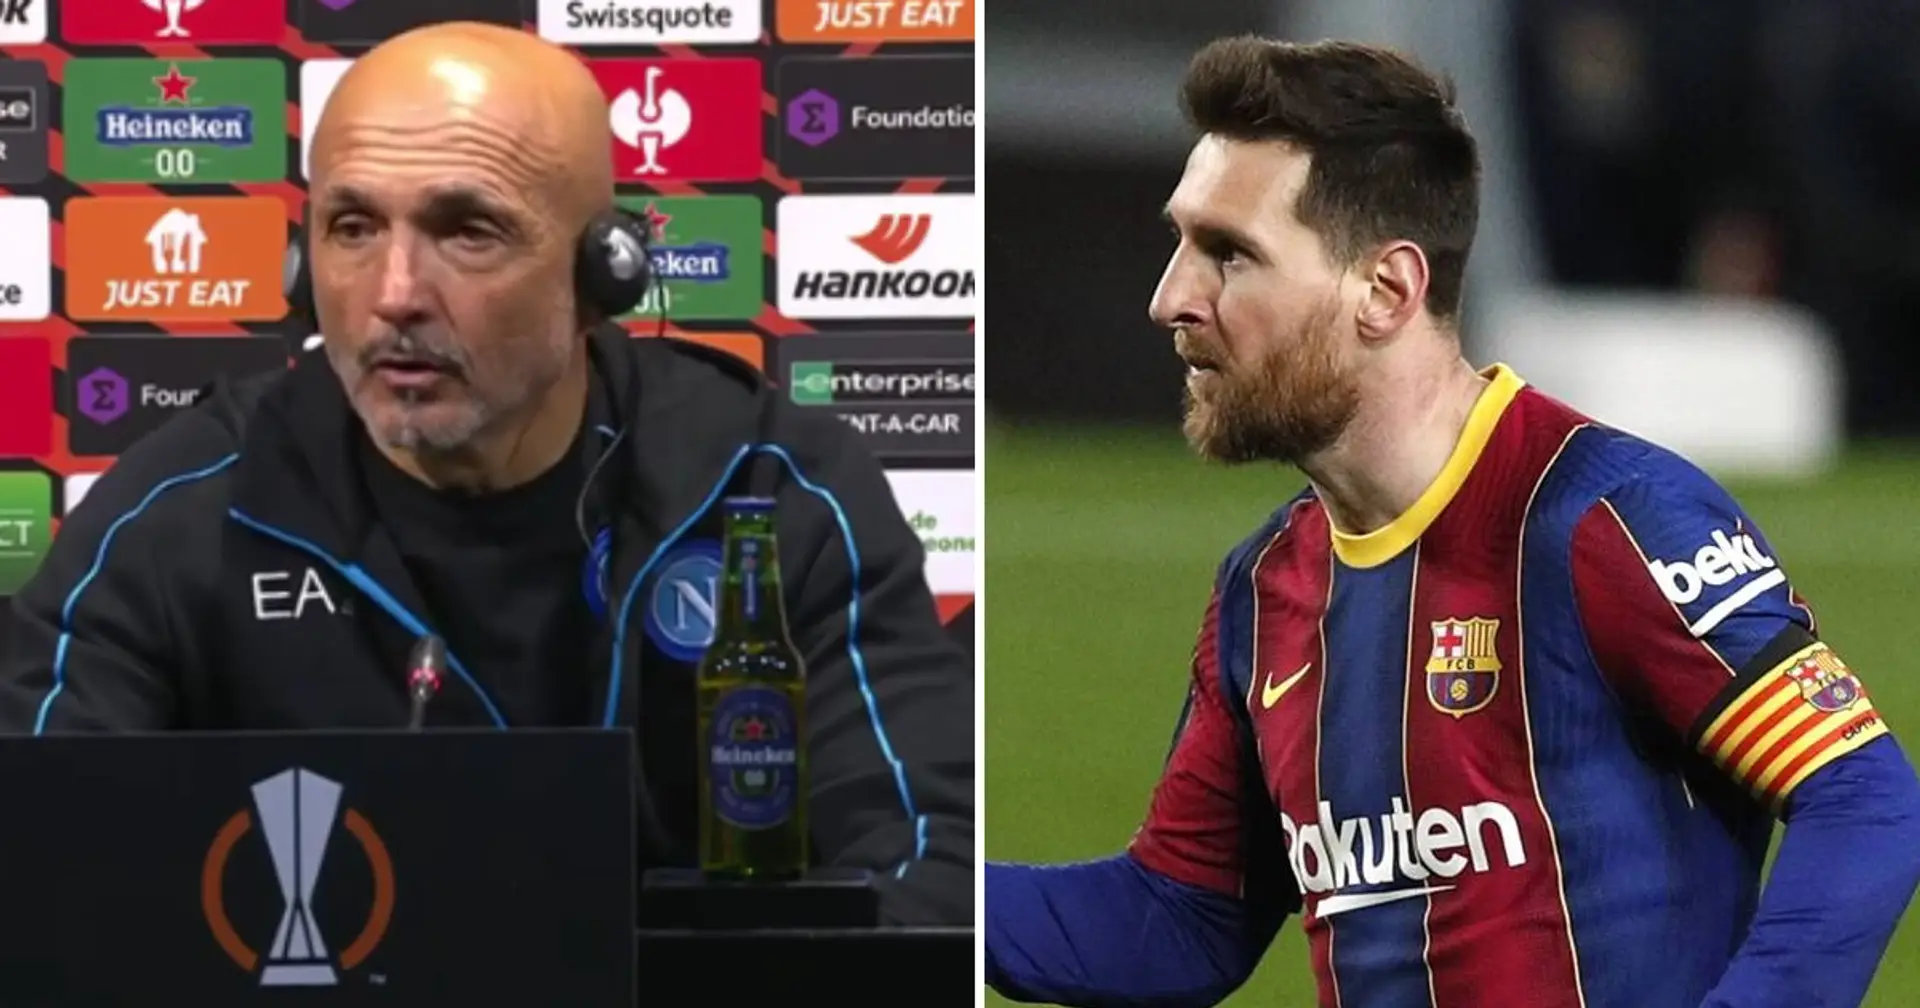 "Ils sont toujours les mêmes": l'entraîneur de Naples, Spaletti, affirme que le Barça est toujours fort sans Messi